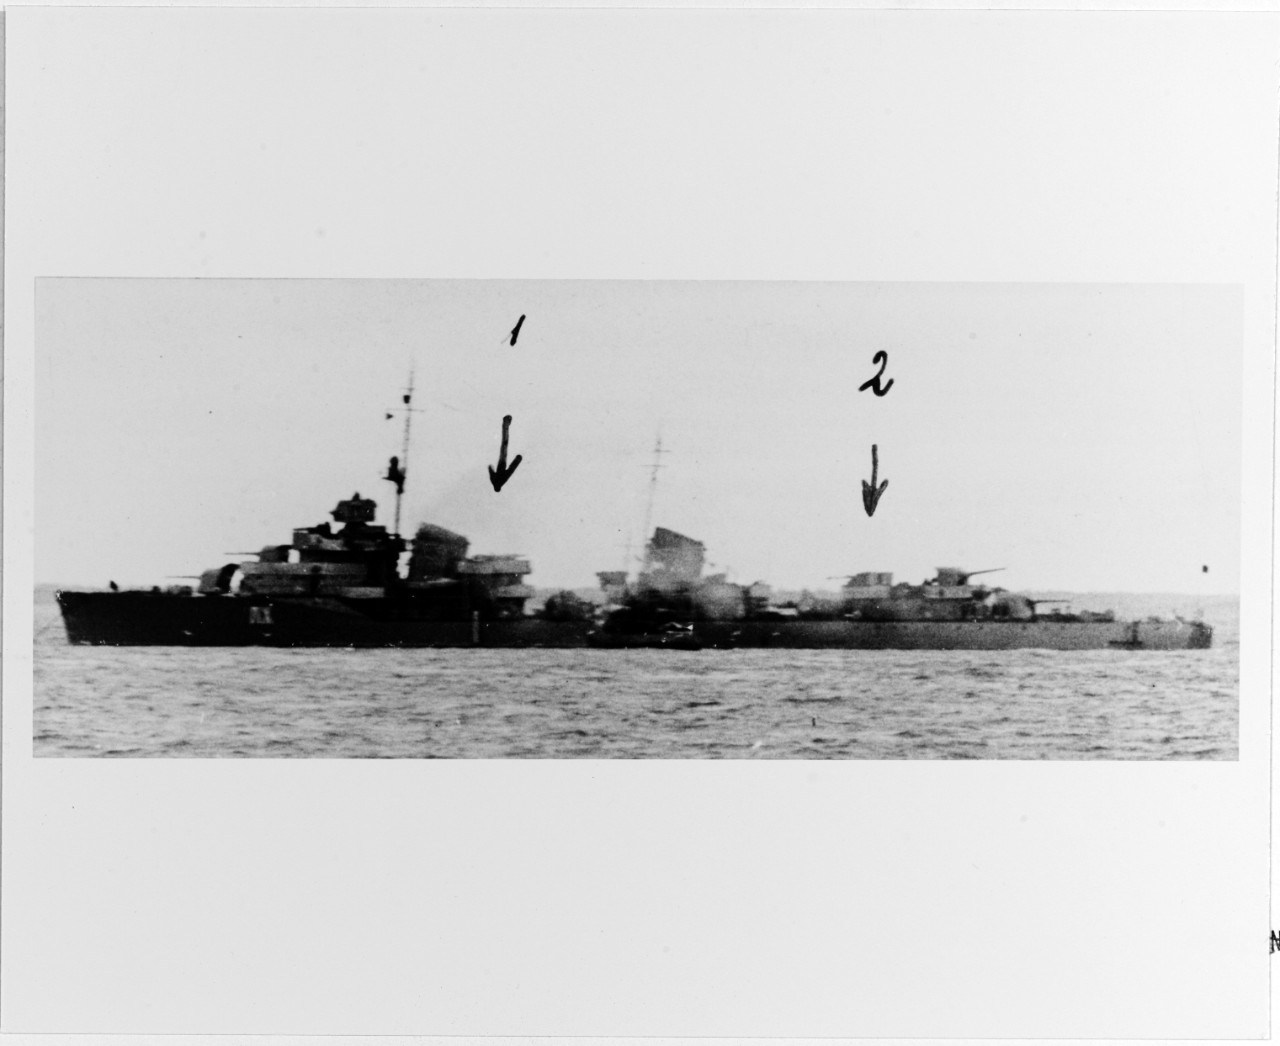 LIKHOL (Soviet destroyer, 1939-1941)